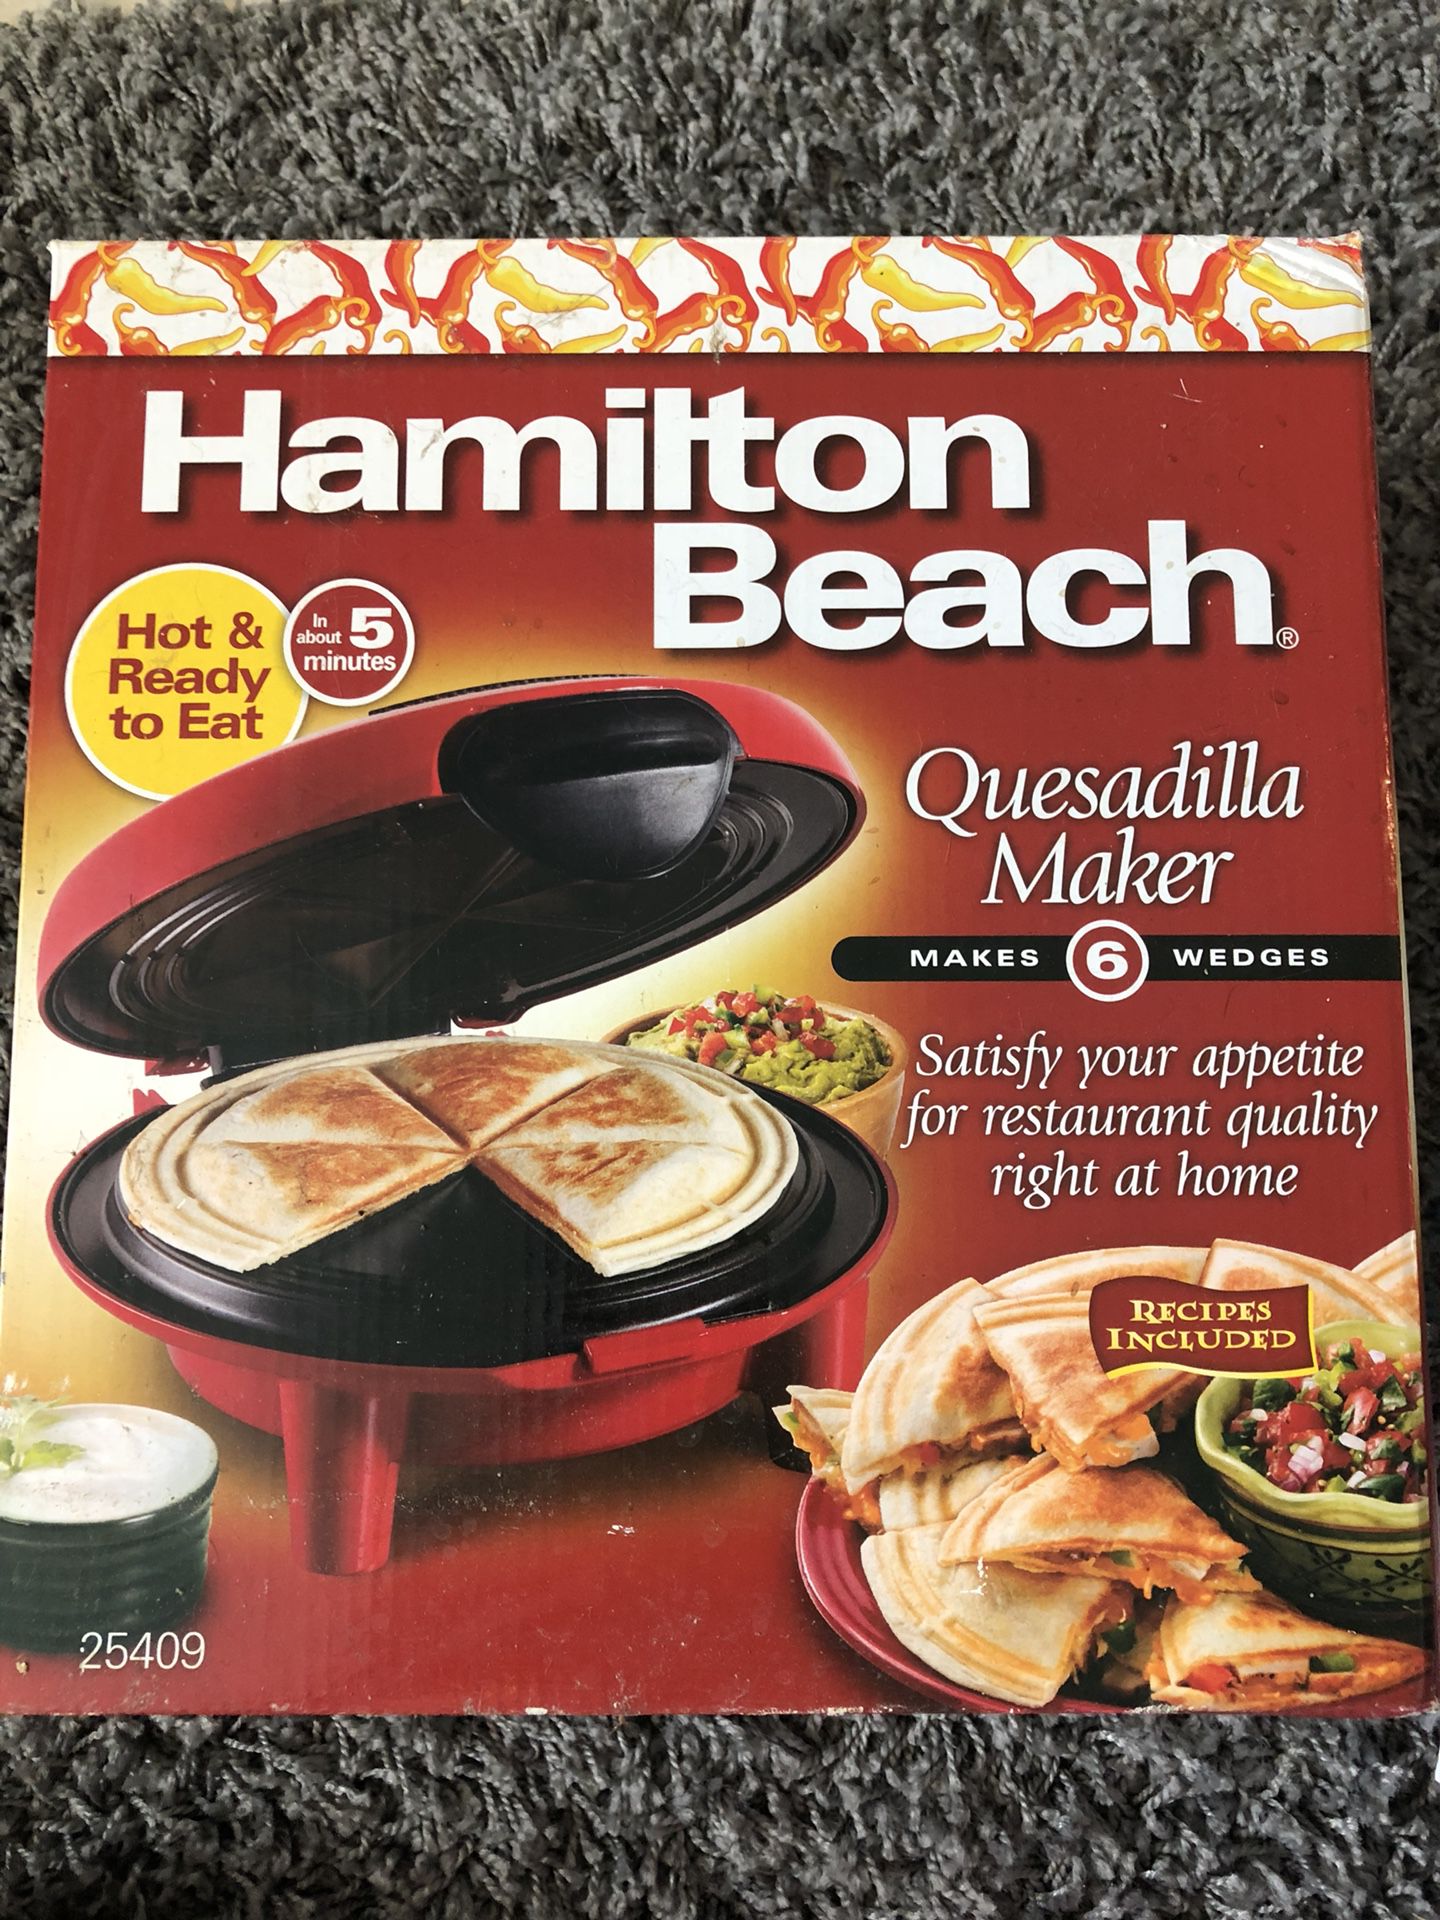 Hamilton Beach Quesadilla Maker, Red